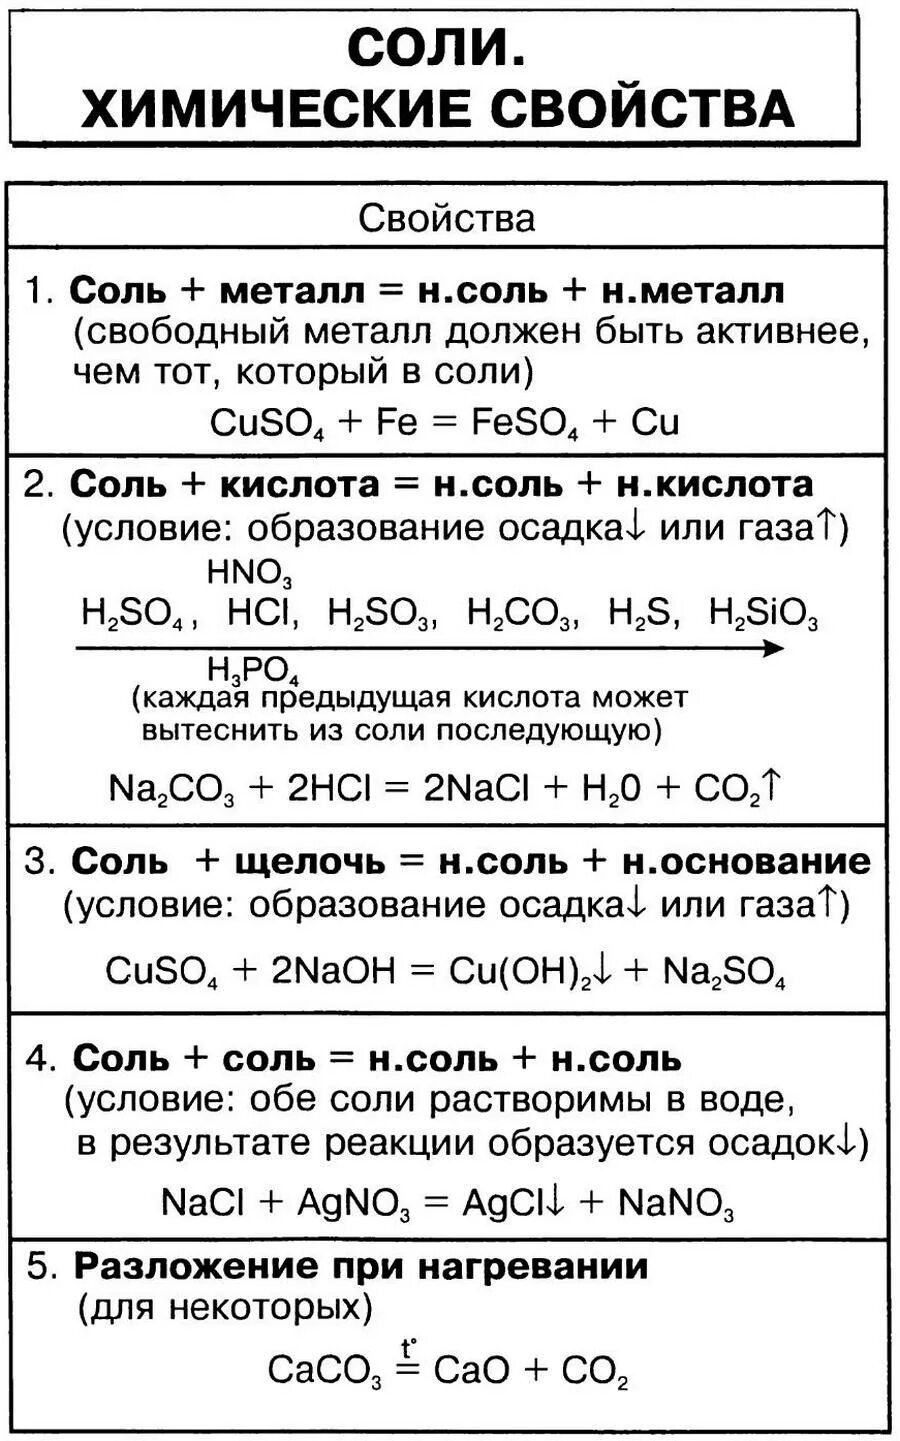 Химические свойства средних солей 8 класс. Химические свойства солей 8 класс химия таблица. Свойства солей химия 8 класс. Соли химические свойства 8 класс таблица. Химические свойства солей 8 класс.